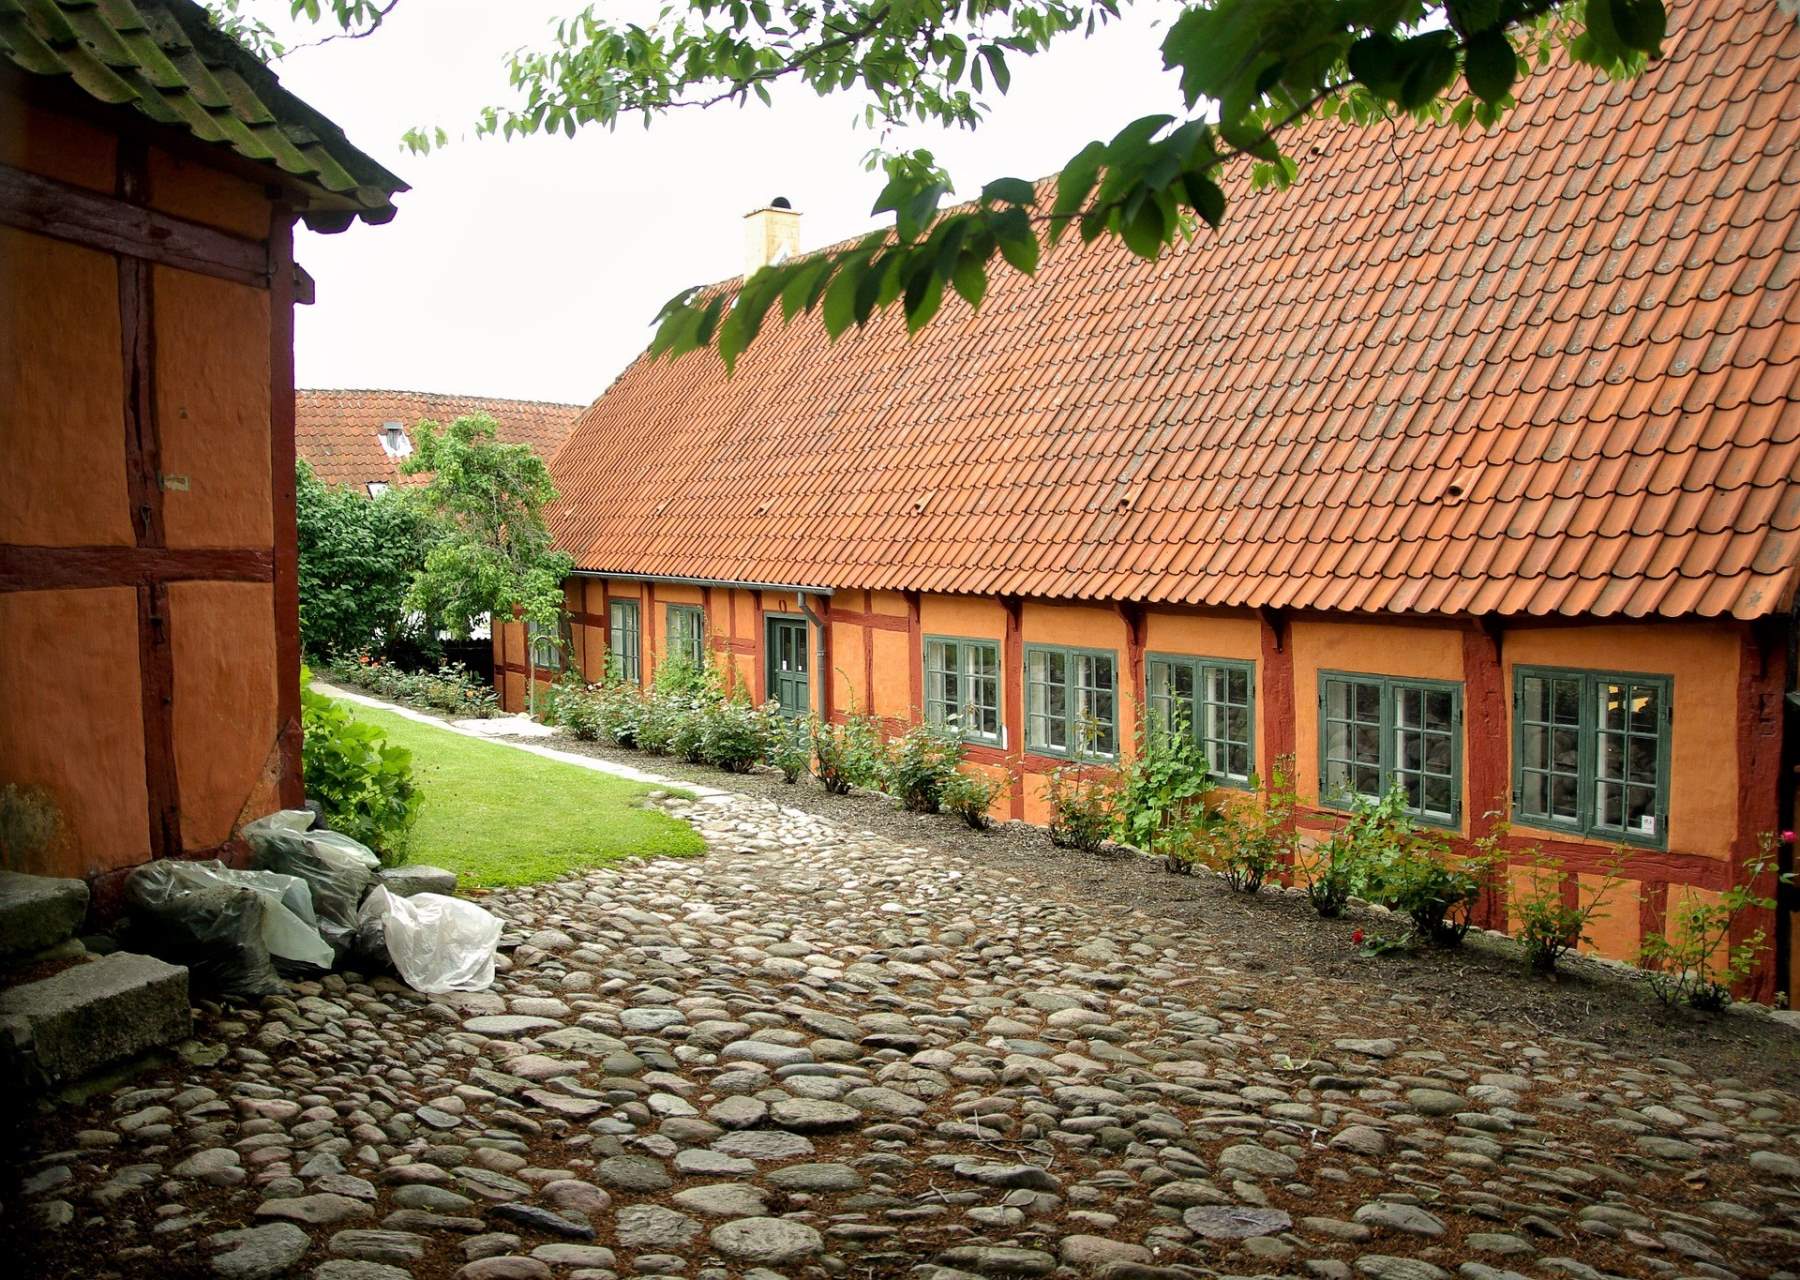 Best Things to Do in Ebeltoft, Denmark - Farvegården - Endless Travel Destinations